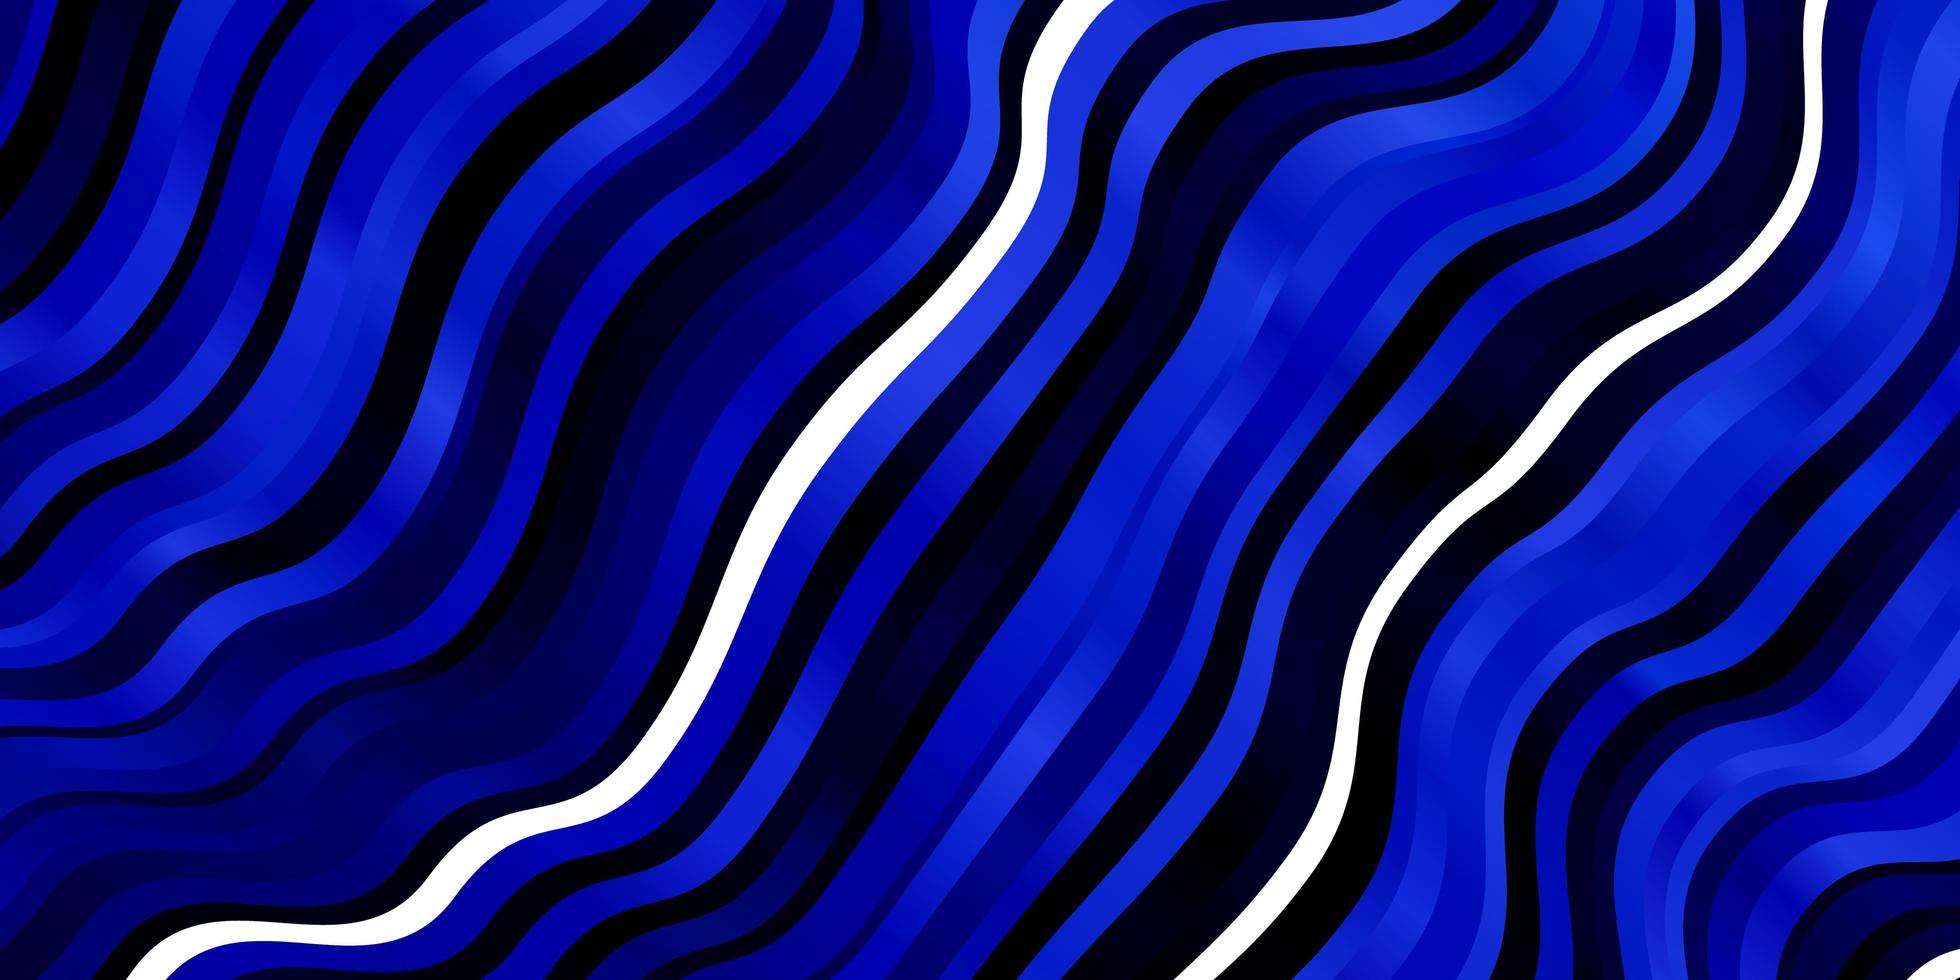 trama vettoriale blu scuro con linee ironiche.